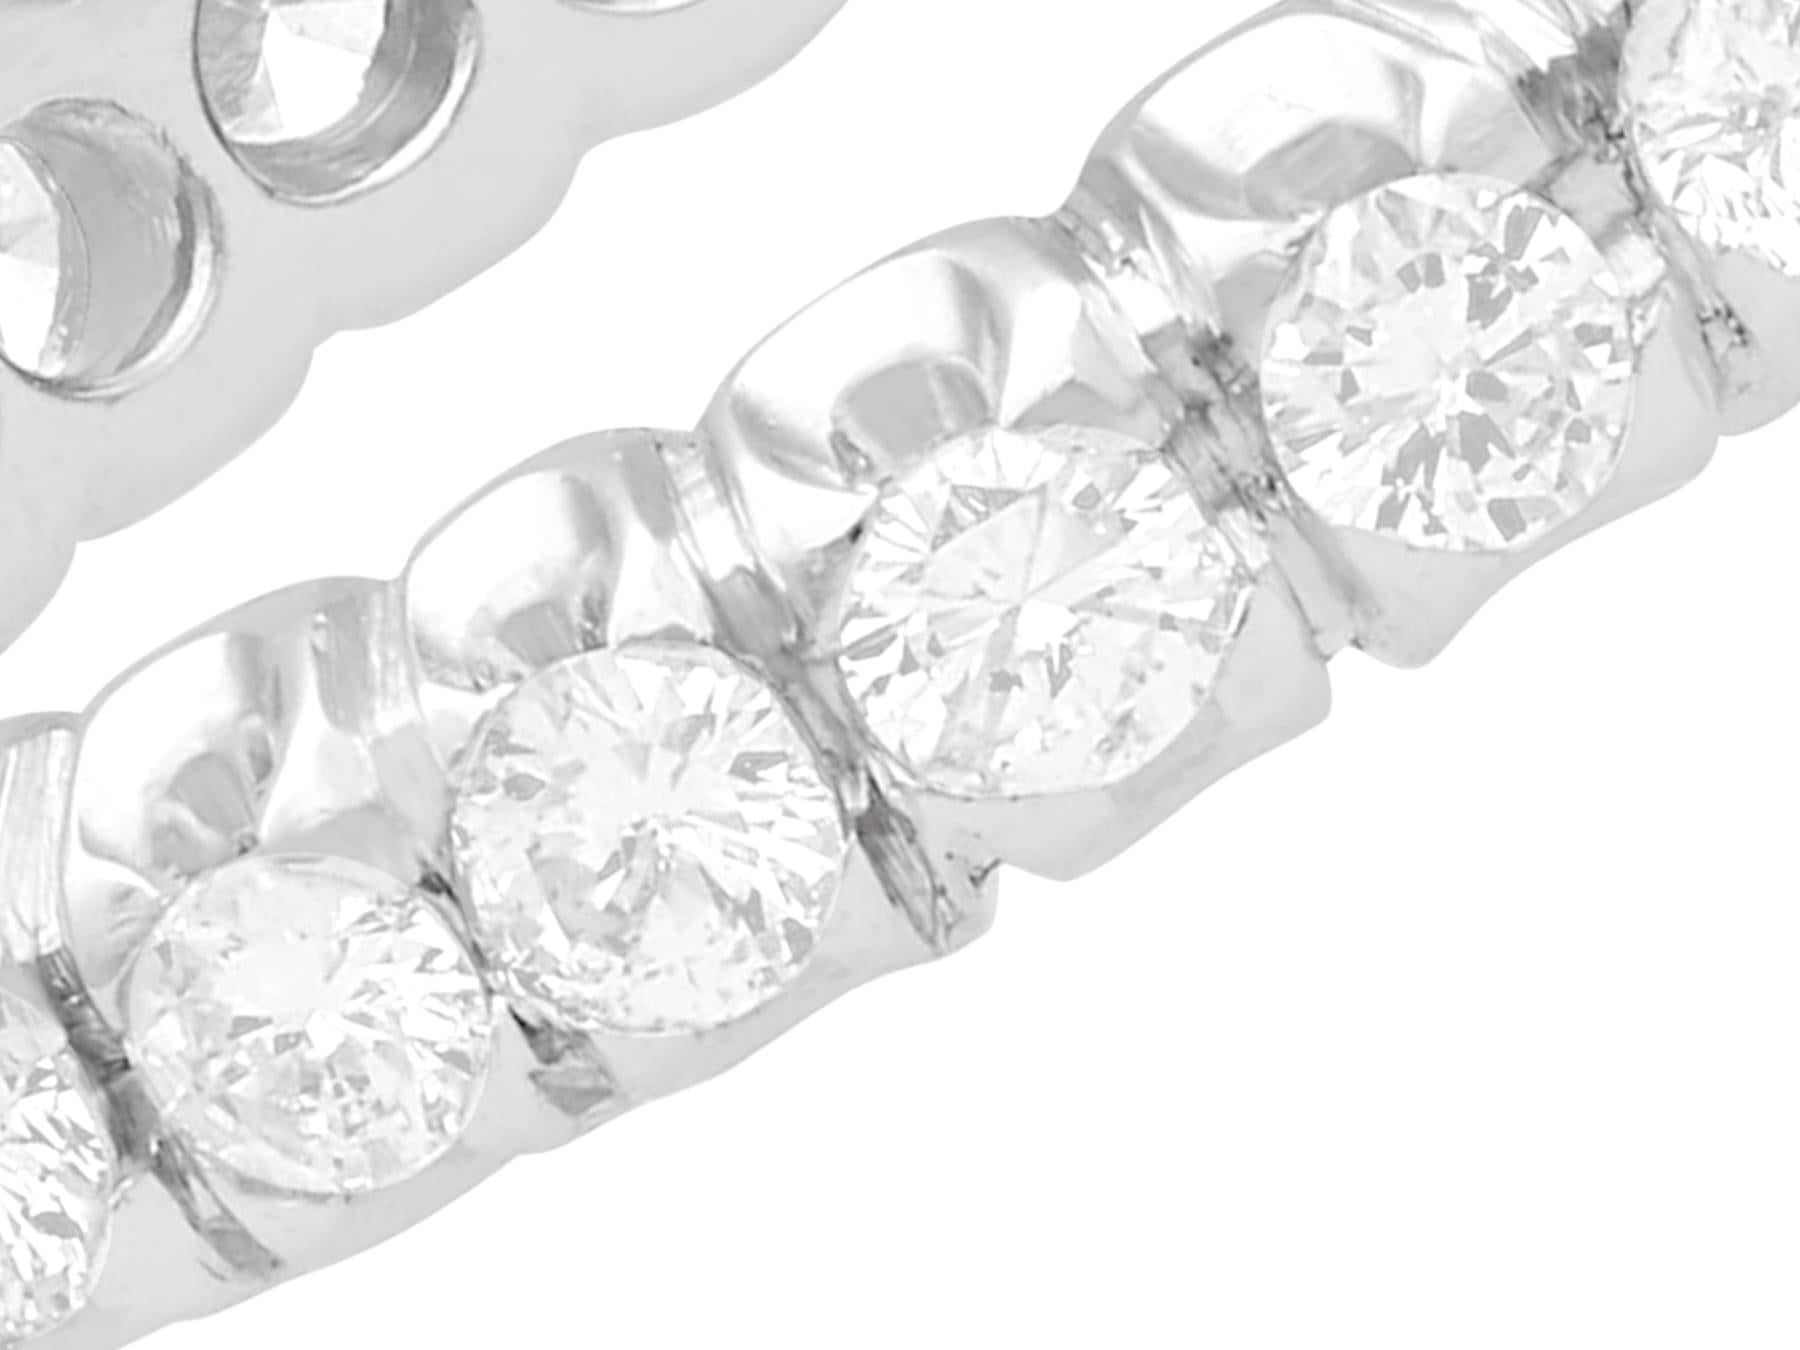 Une belle et impressionnante bague d'éternité en or blanc 18 carats avec un diamant de 0,90 carat. Cette bague fait partie de notre collection de bijoux vintage et de bijoux de succession.

Cette impressionnante bague d'éternité en diamant a été